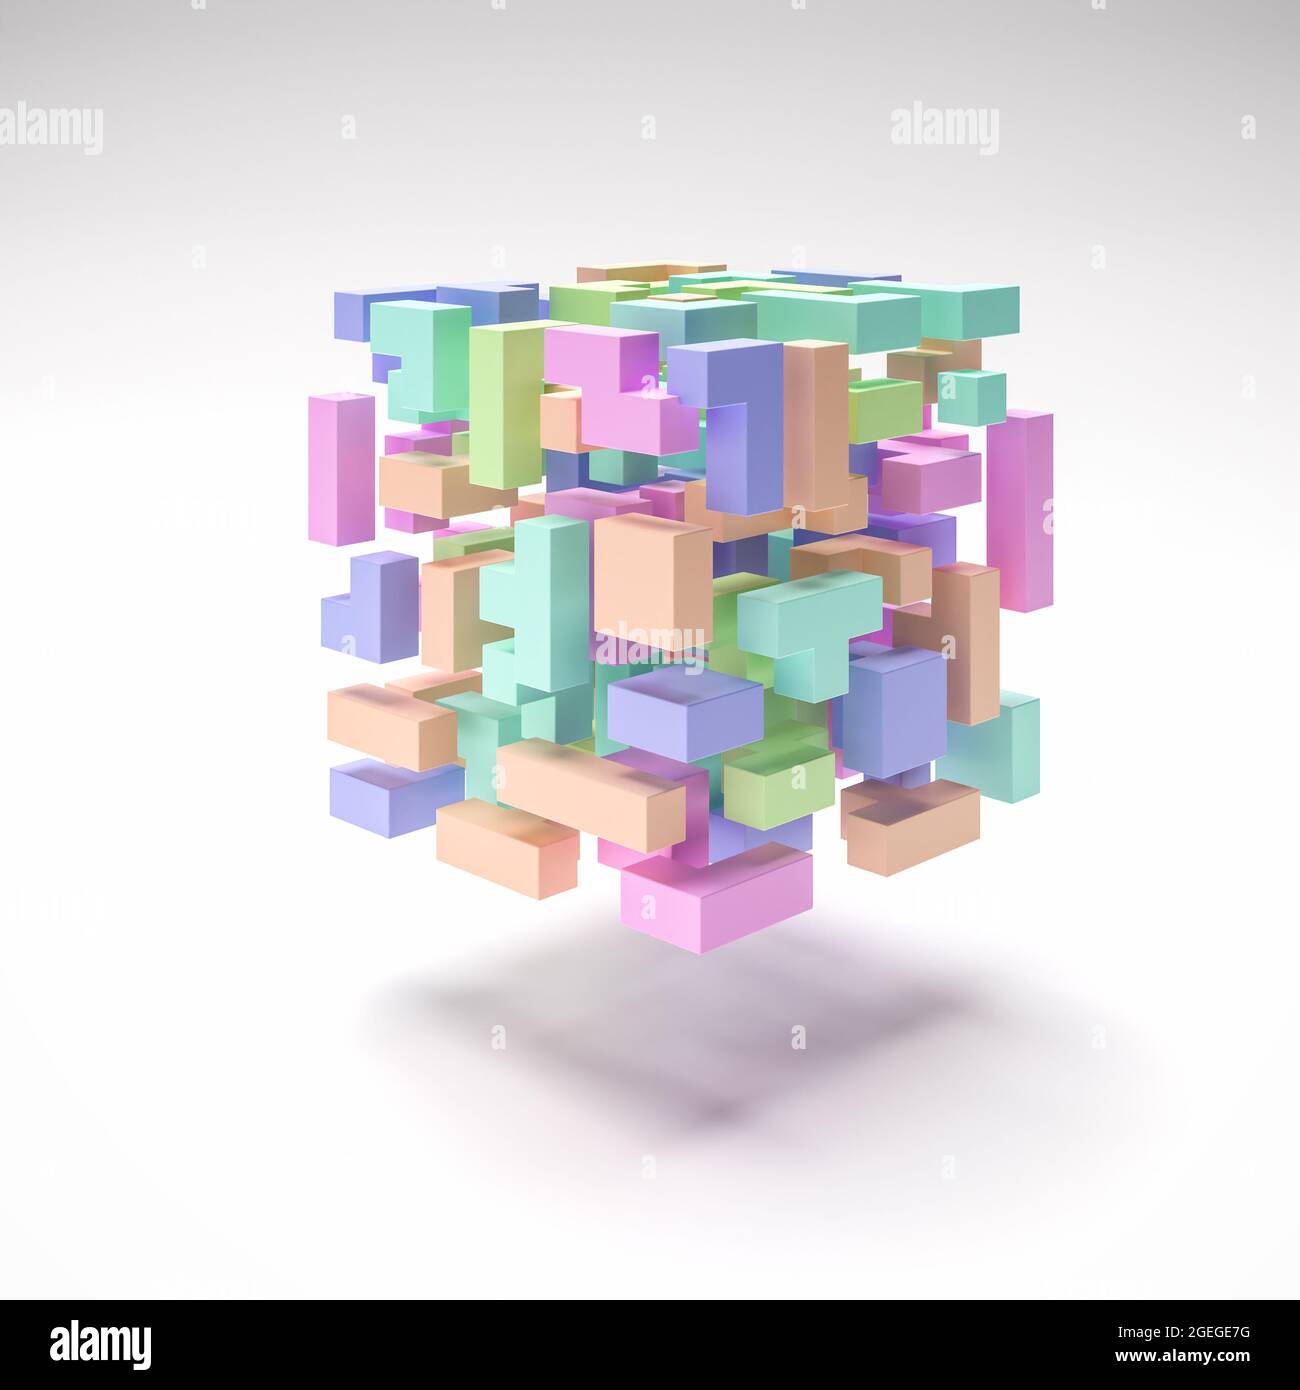 Un cubo di tetris hovering come blocchi in diversi colori pastello e forme in una vista esplosa. Sfondo astratto. Foto Stock